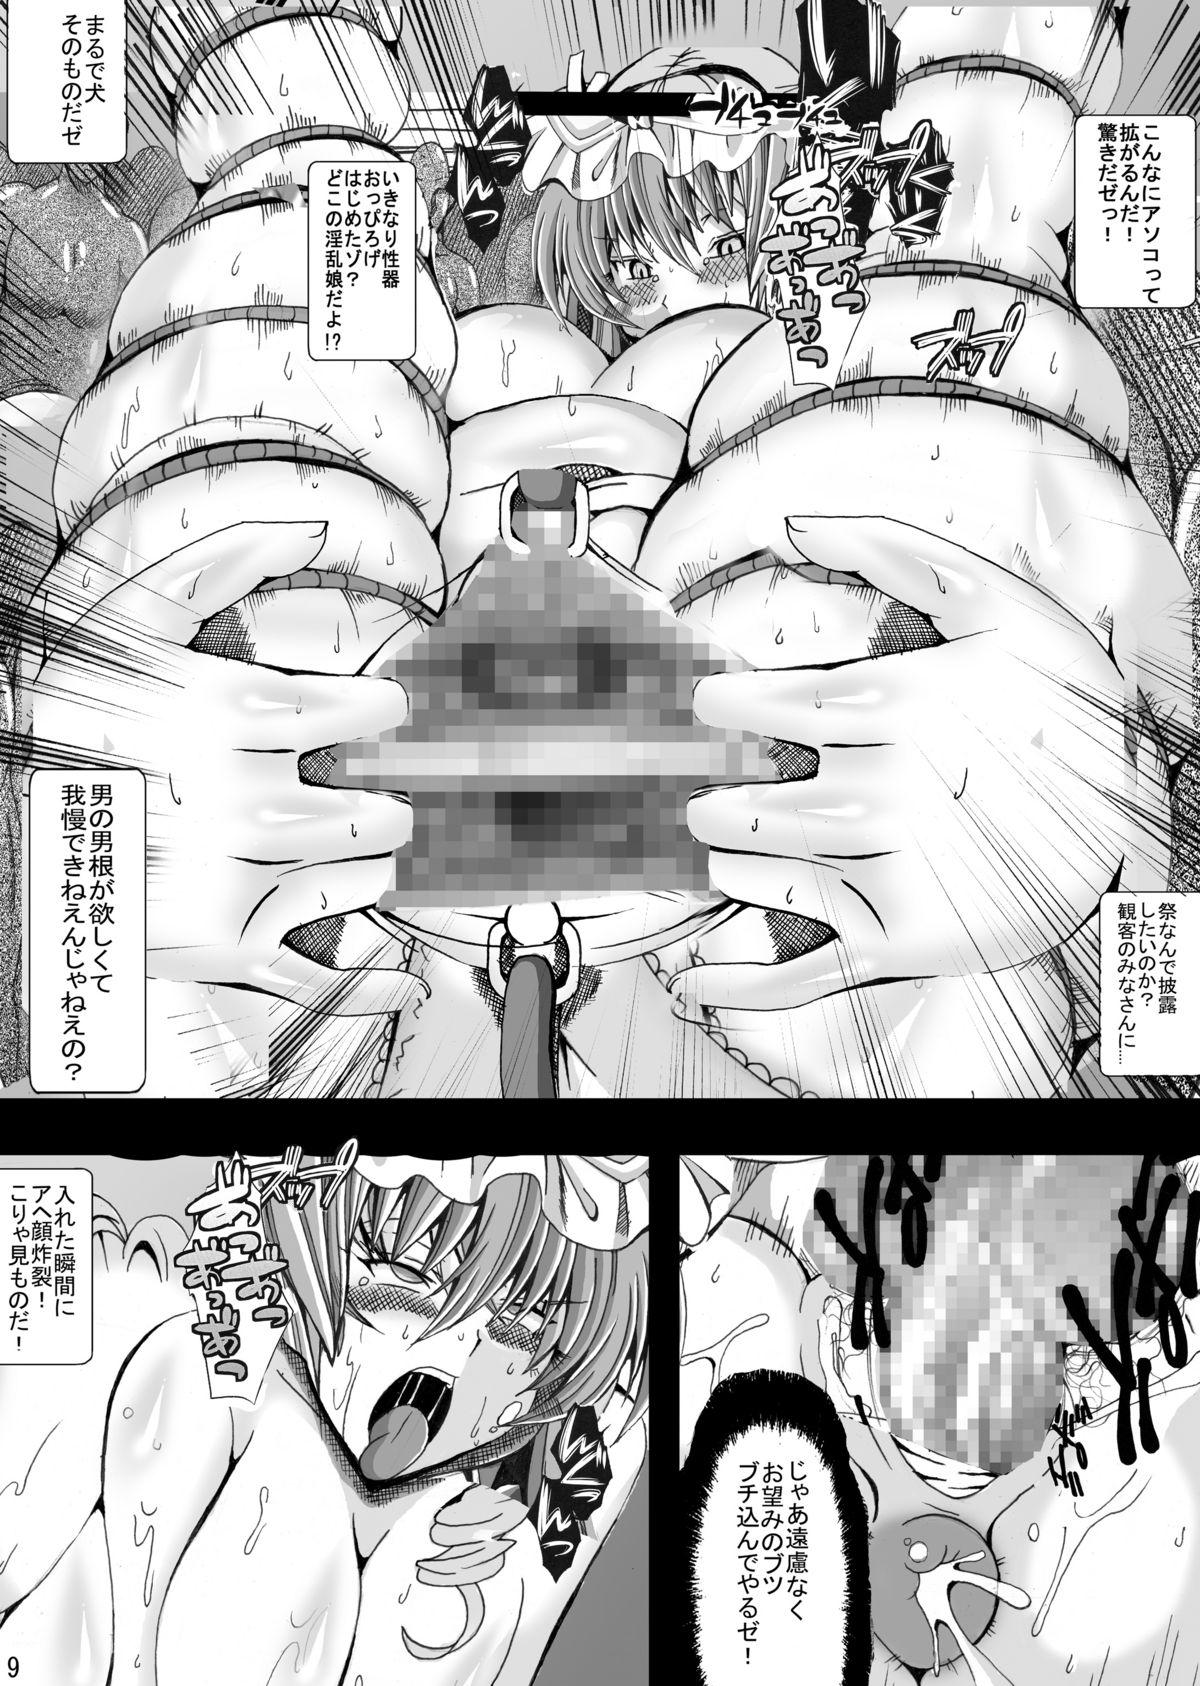 Cumming Touhou Chichi Nikusai Vol. 2 - Touhou project Tributo - Page 8